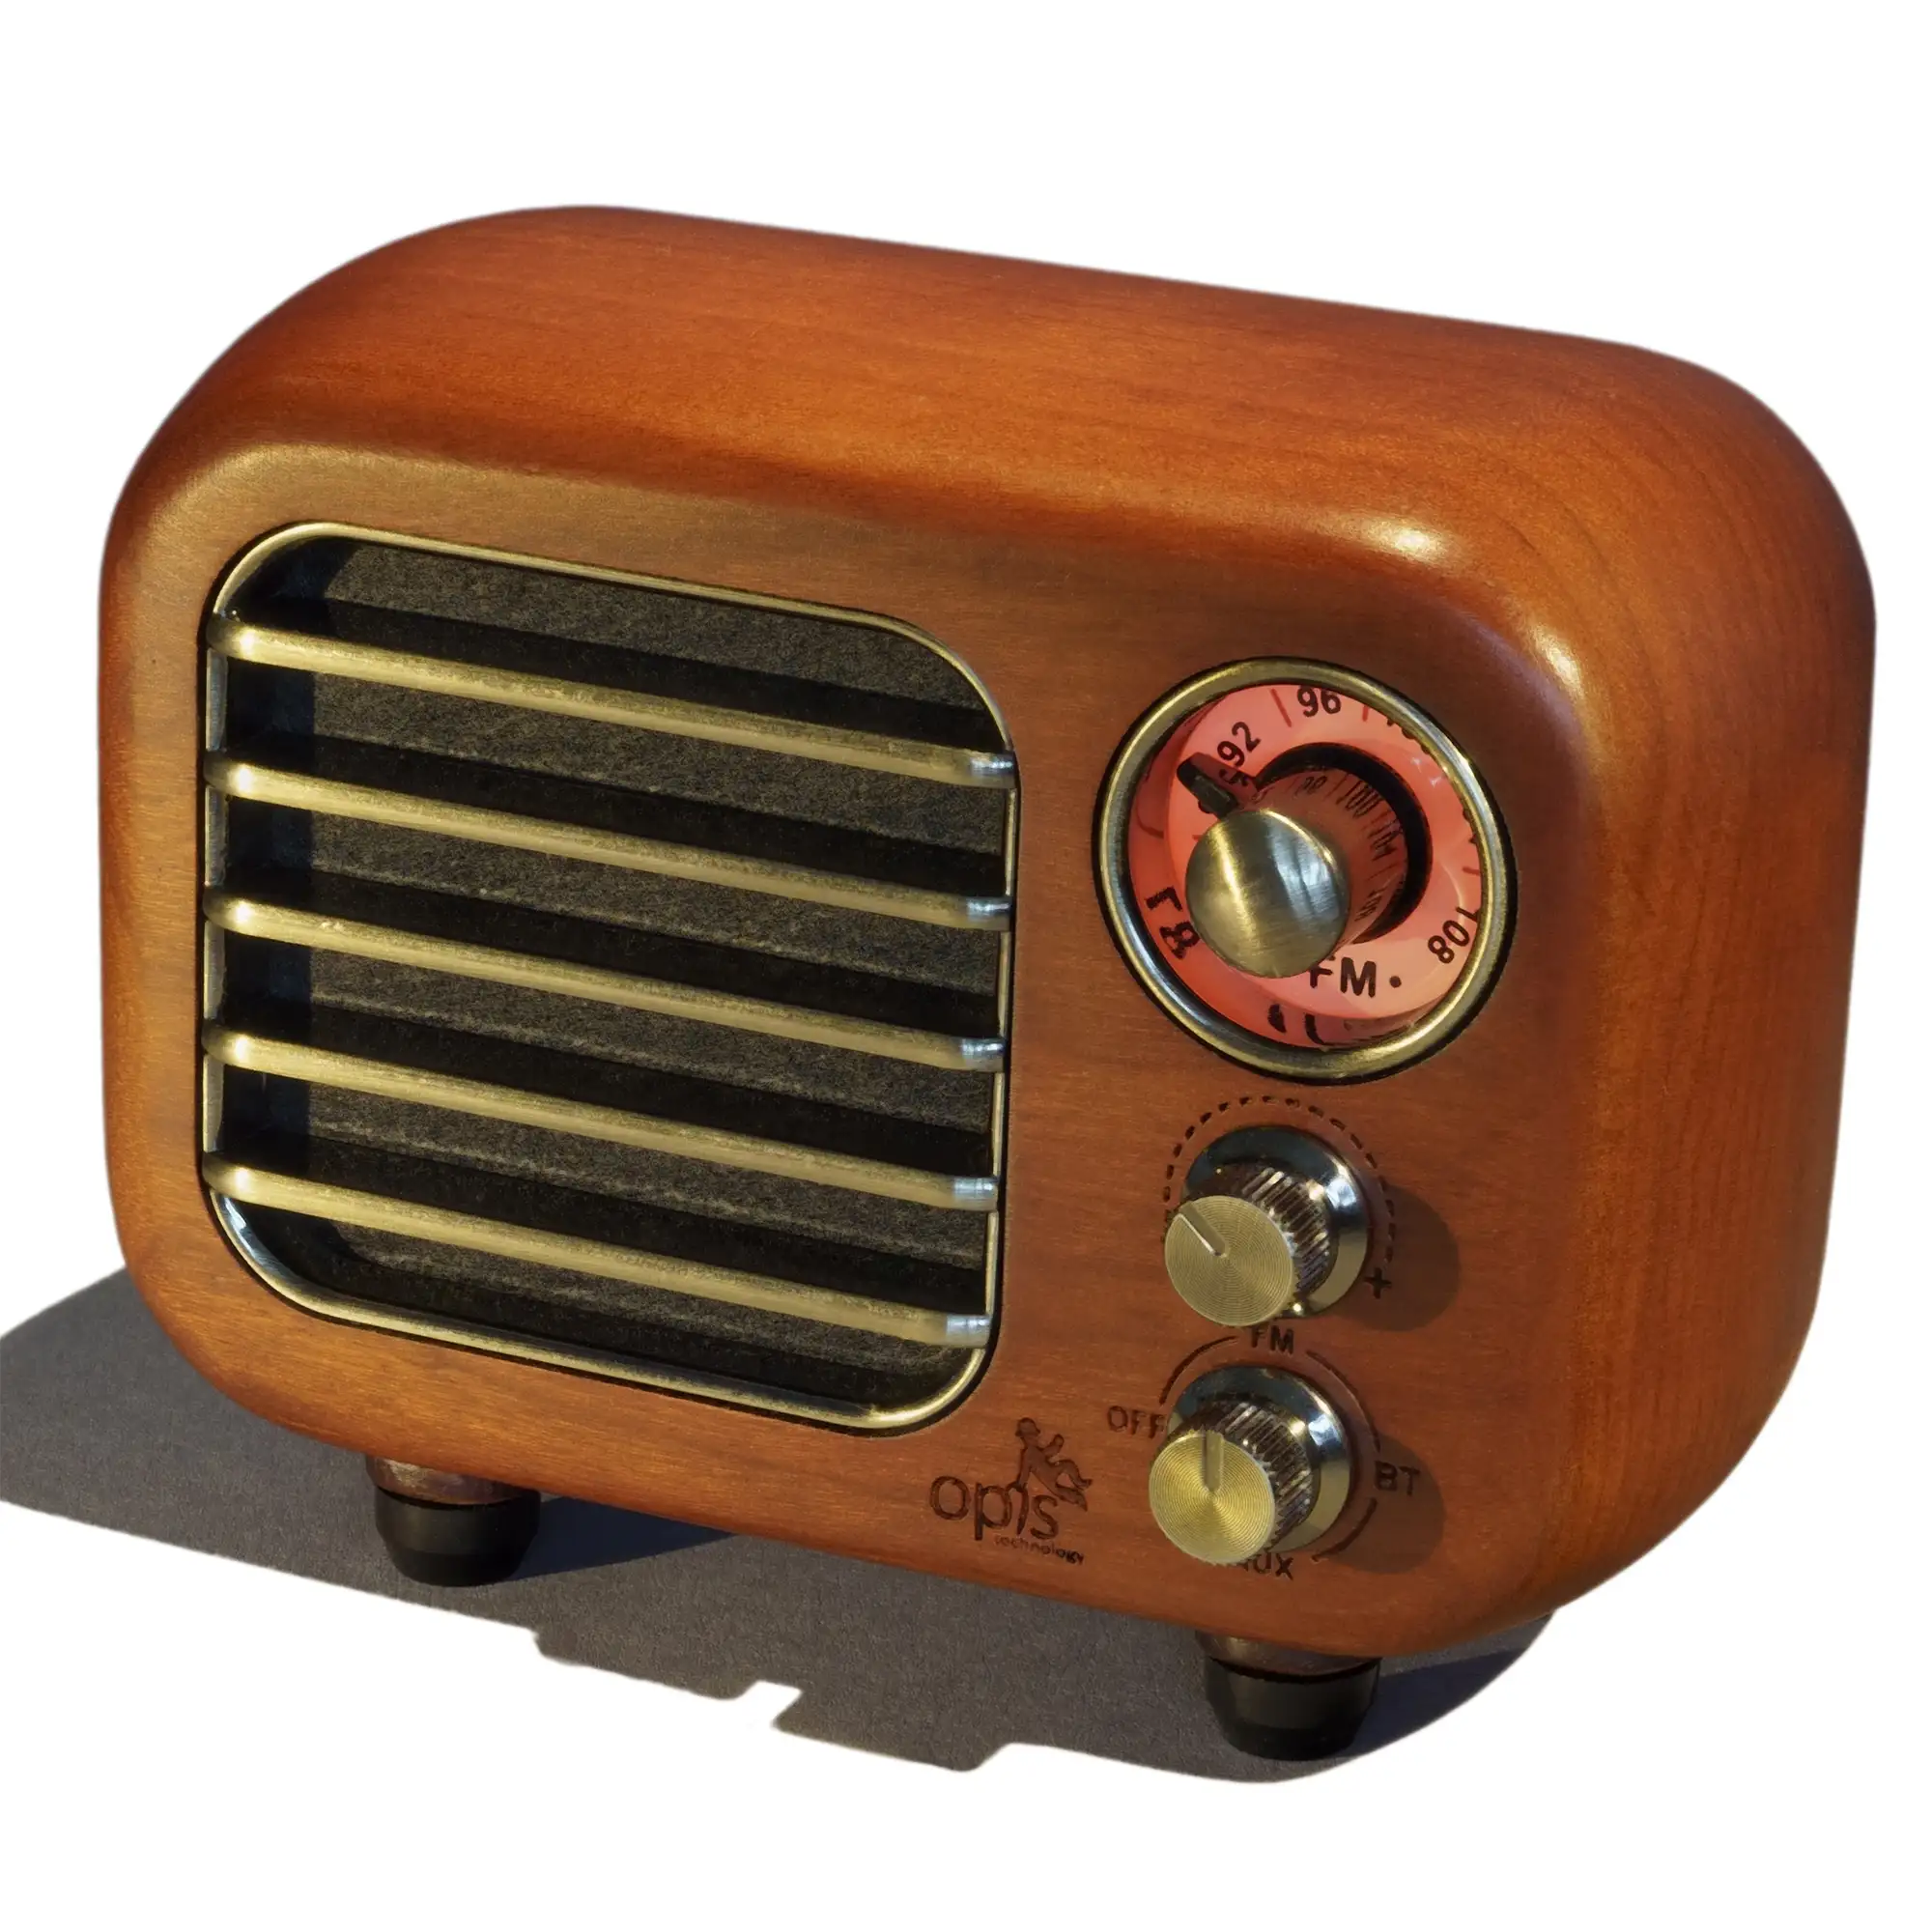 Opis Radio 3 – Piccolo altoparlante Bluetooth retrò in legno e radio VHF  (Ciliegio) - Opis Technology